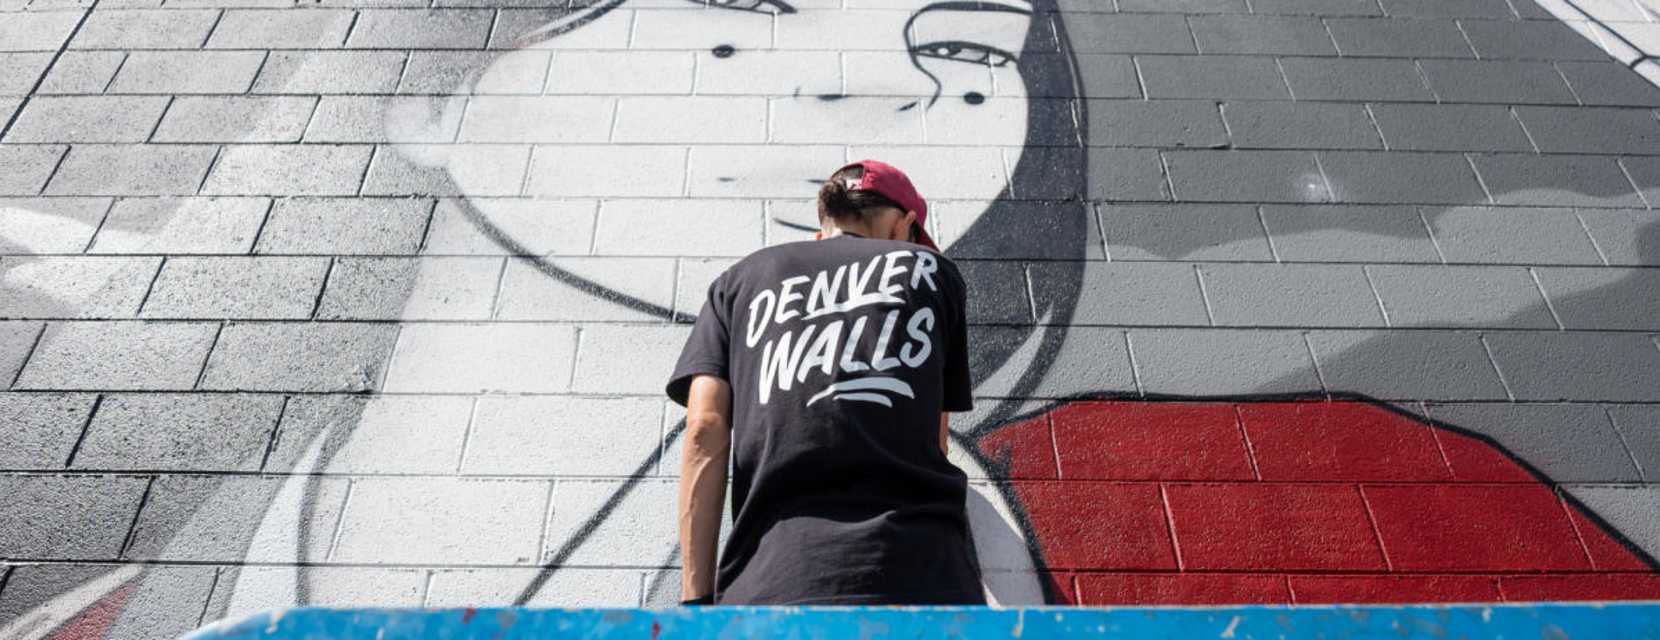 DENVER WALLS mural festival